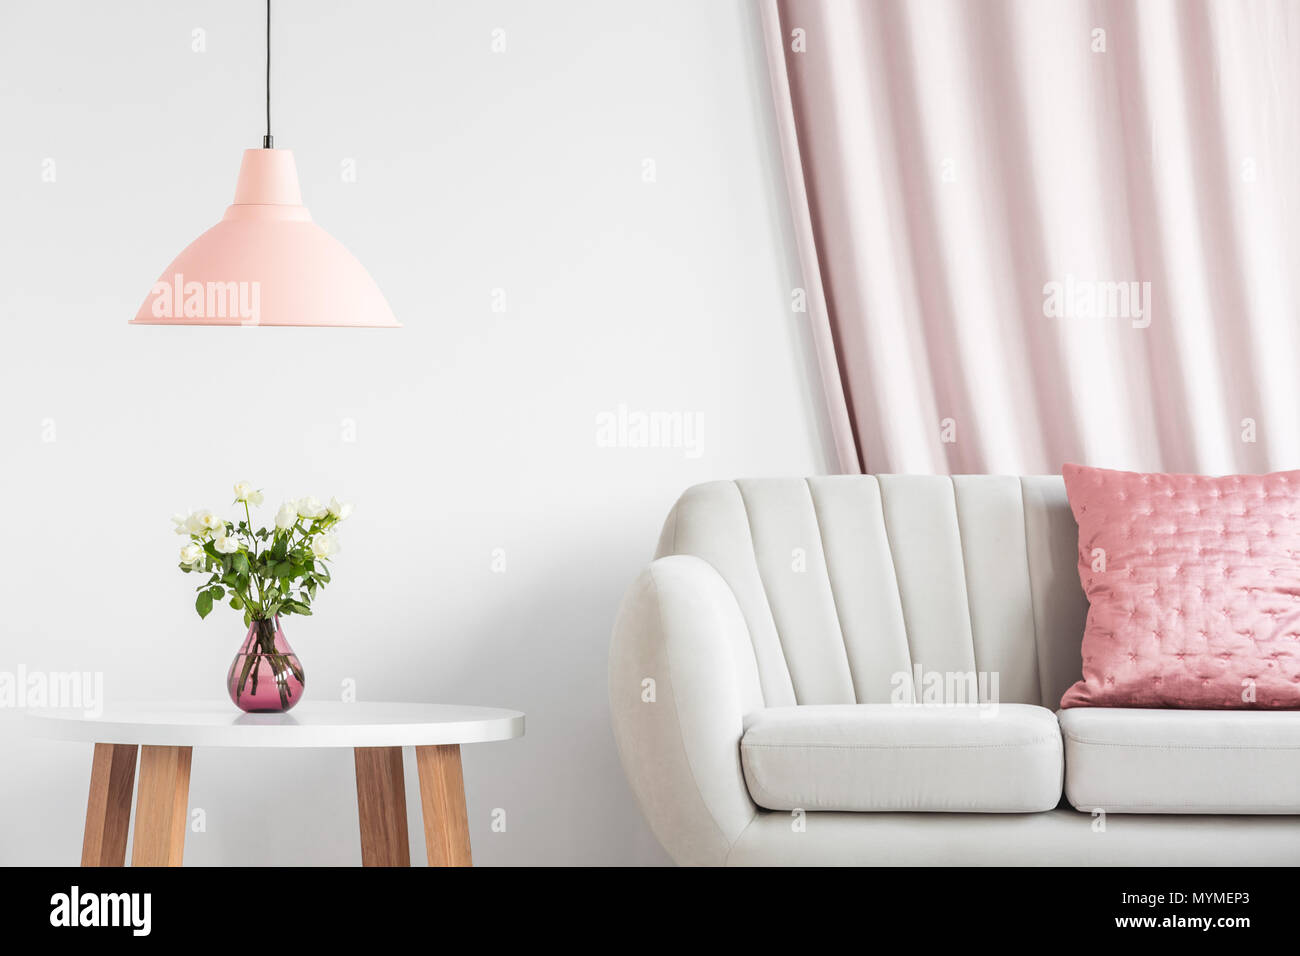 Pfirsich Lampe über Holztisch mit weißen Rosen in rosa Vase neben einem Sofa im Wohnzimmer Innenraum Stockfoto